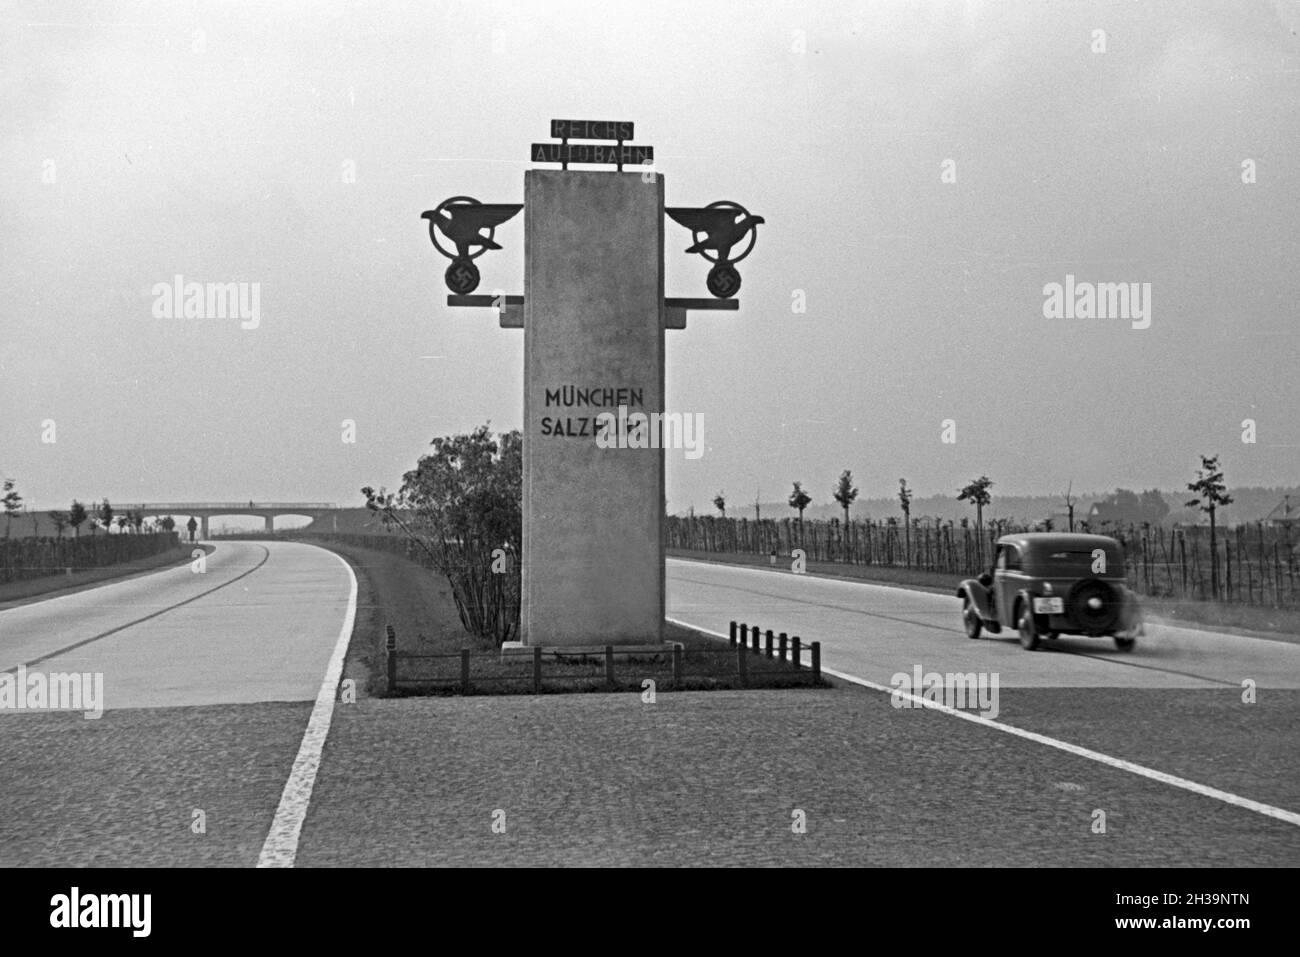 Unterwegs auf der Reichsautobahn München Salzburg, Deutschland 1930er Jahre. Su Reichsautobahn autostrada Monaco - Salisburgo, Germania 1930s. Foto Stock